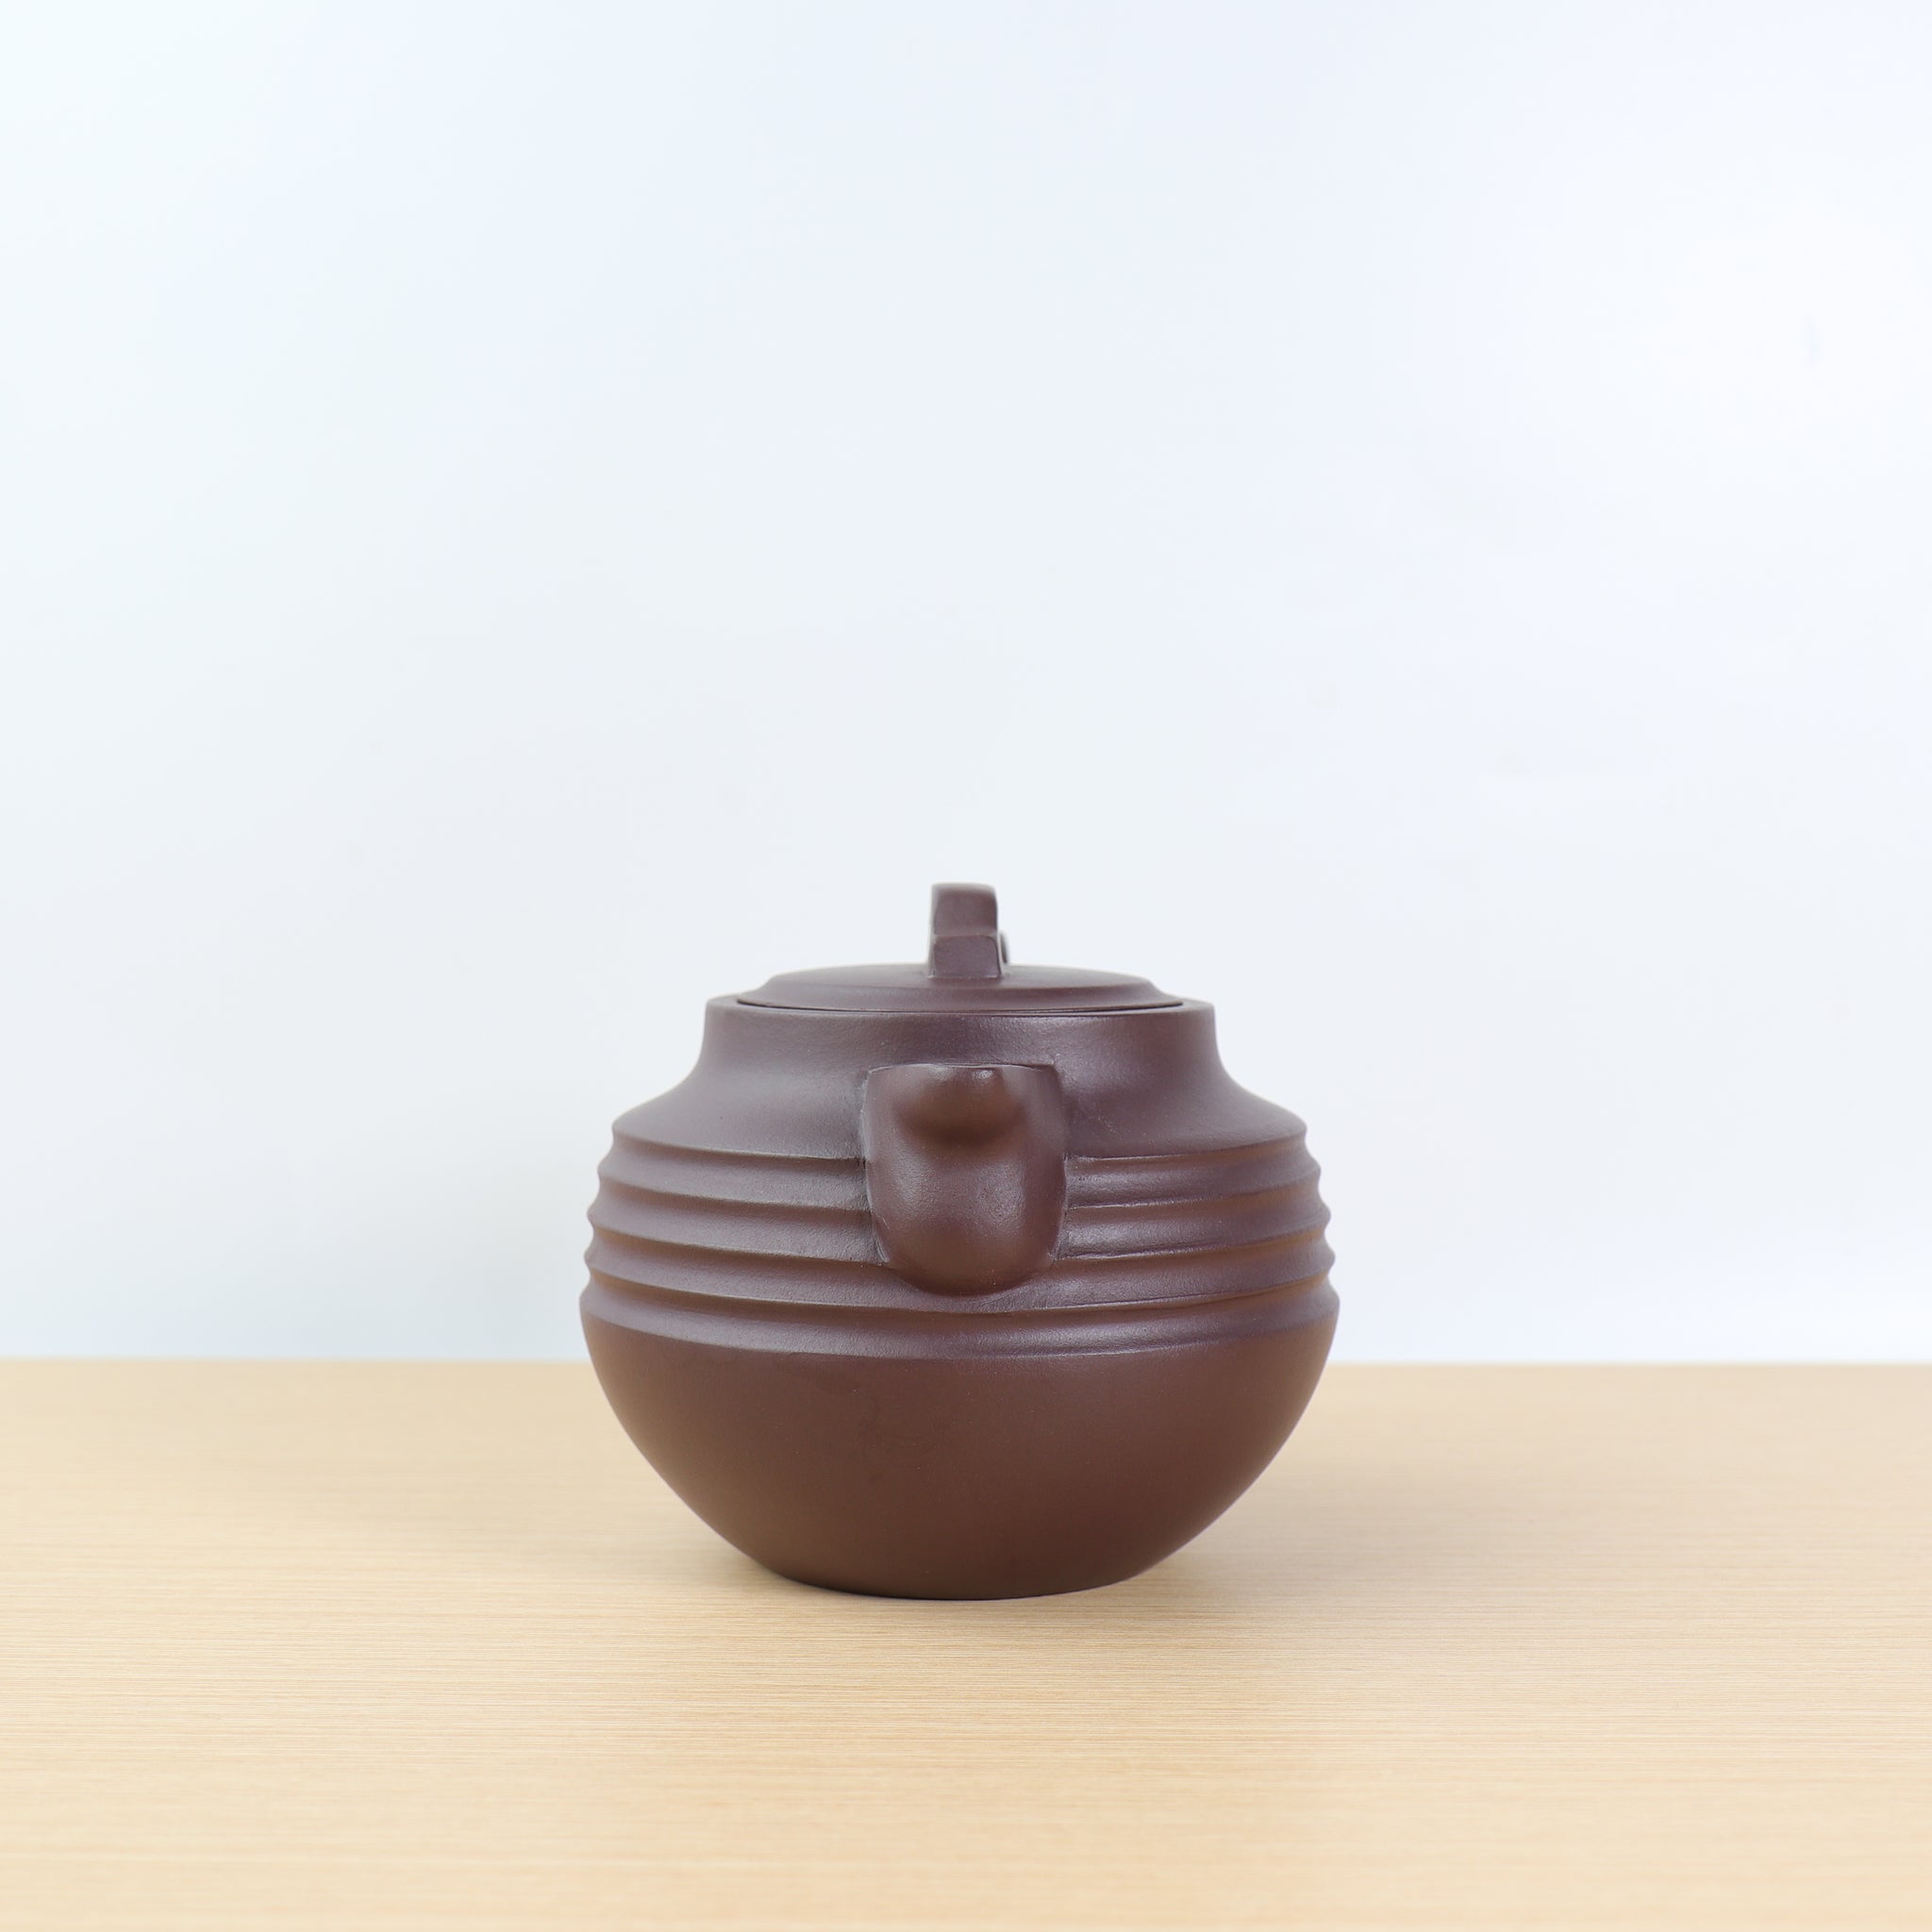 【瓦當】全手工紫泥簡樸紫砂茶壺